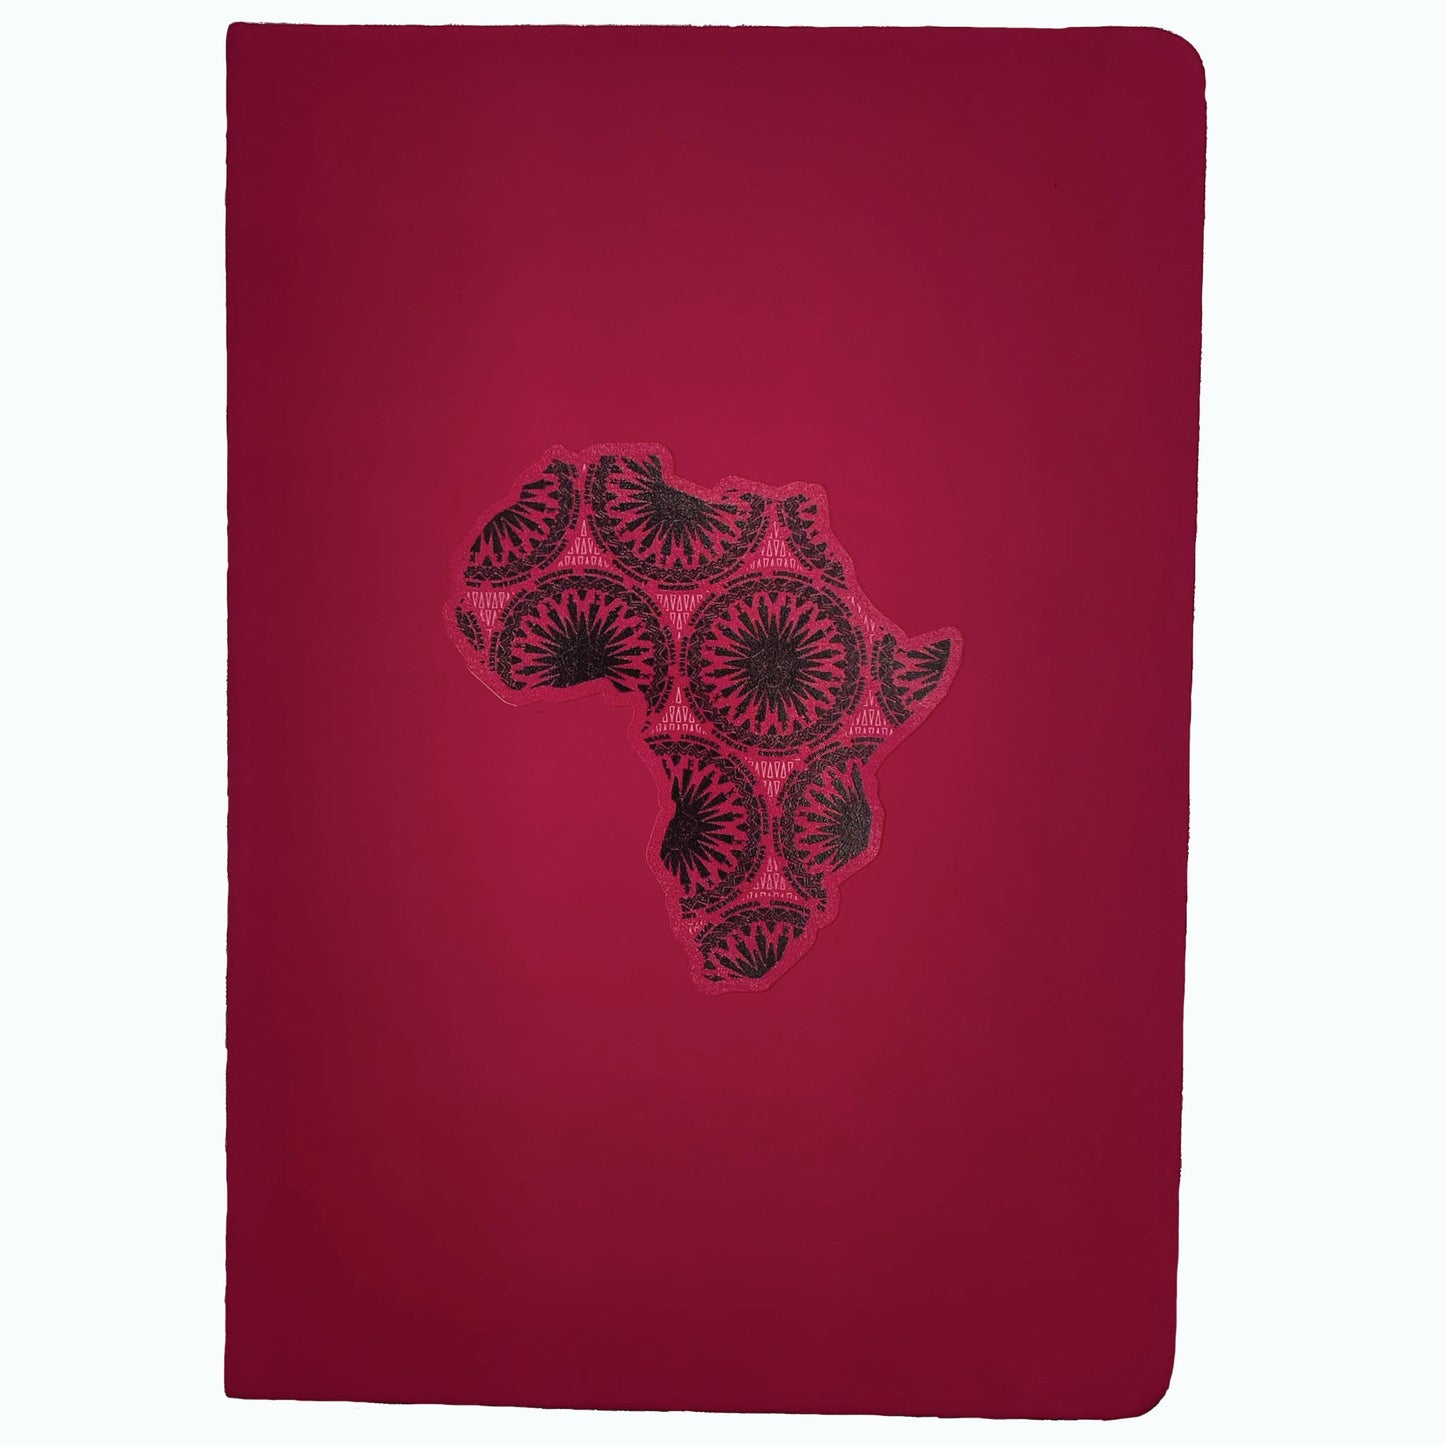 AFRICA MAP NOTEBOOK